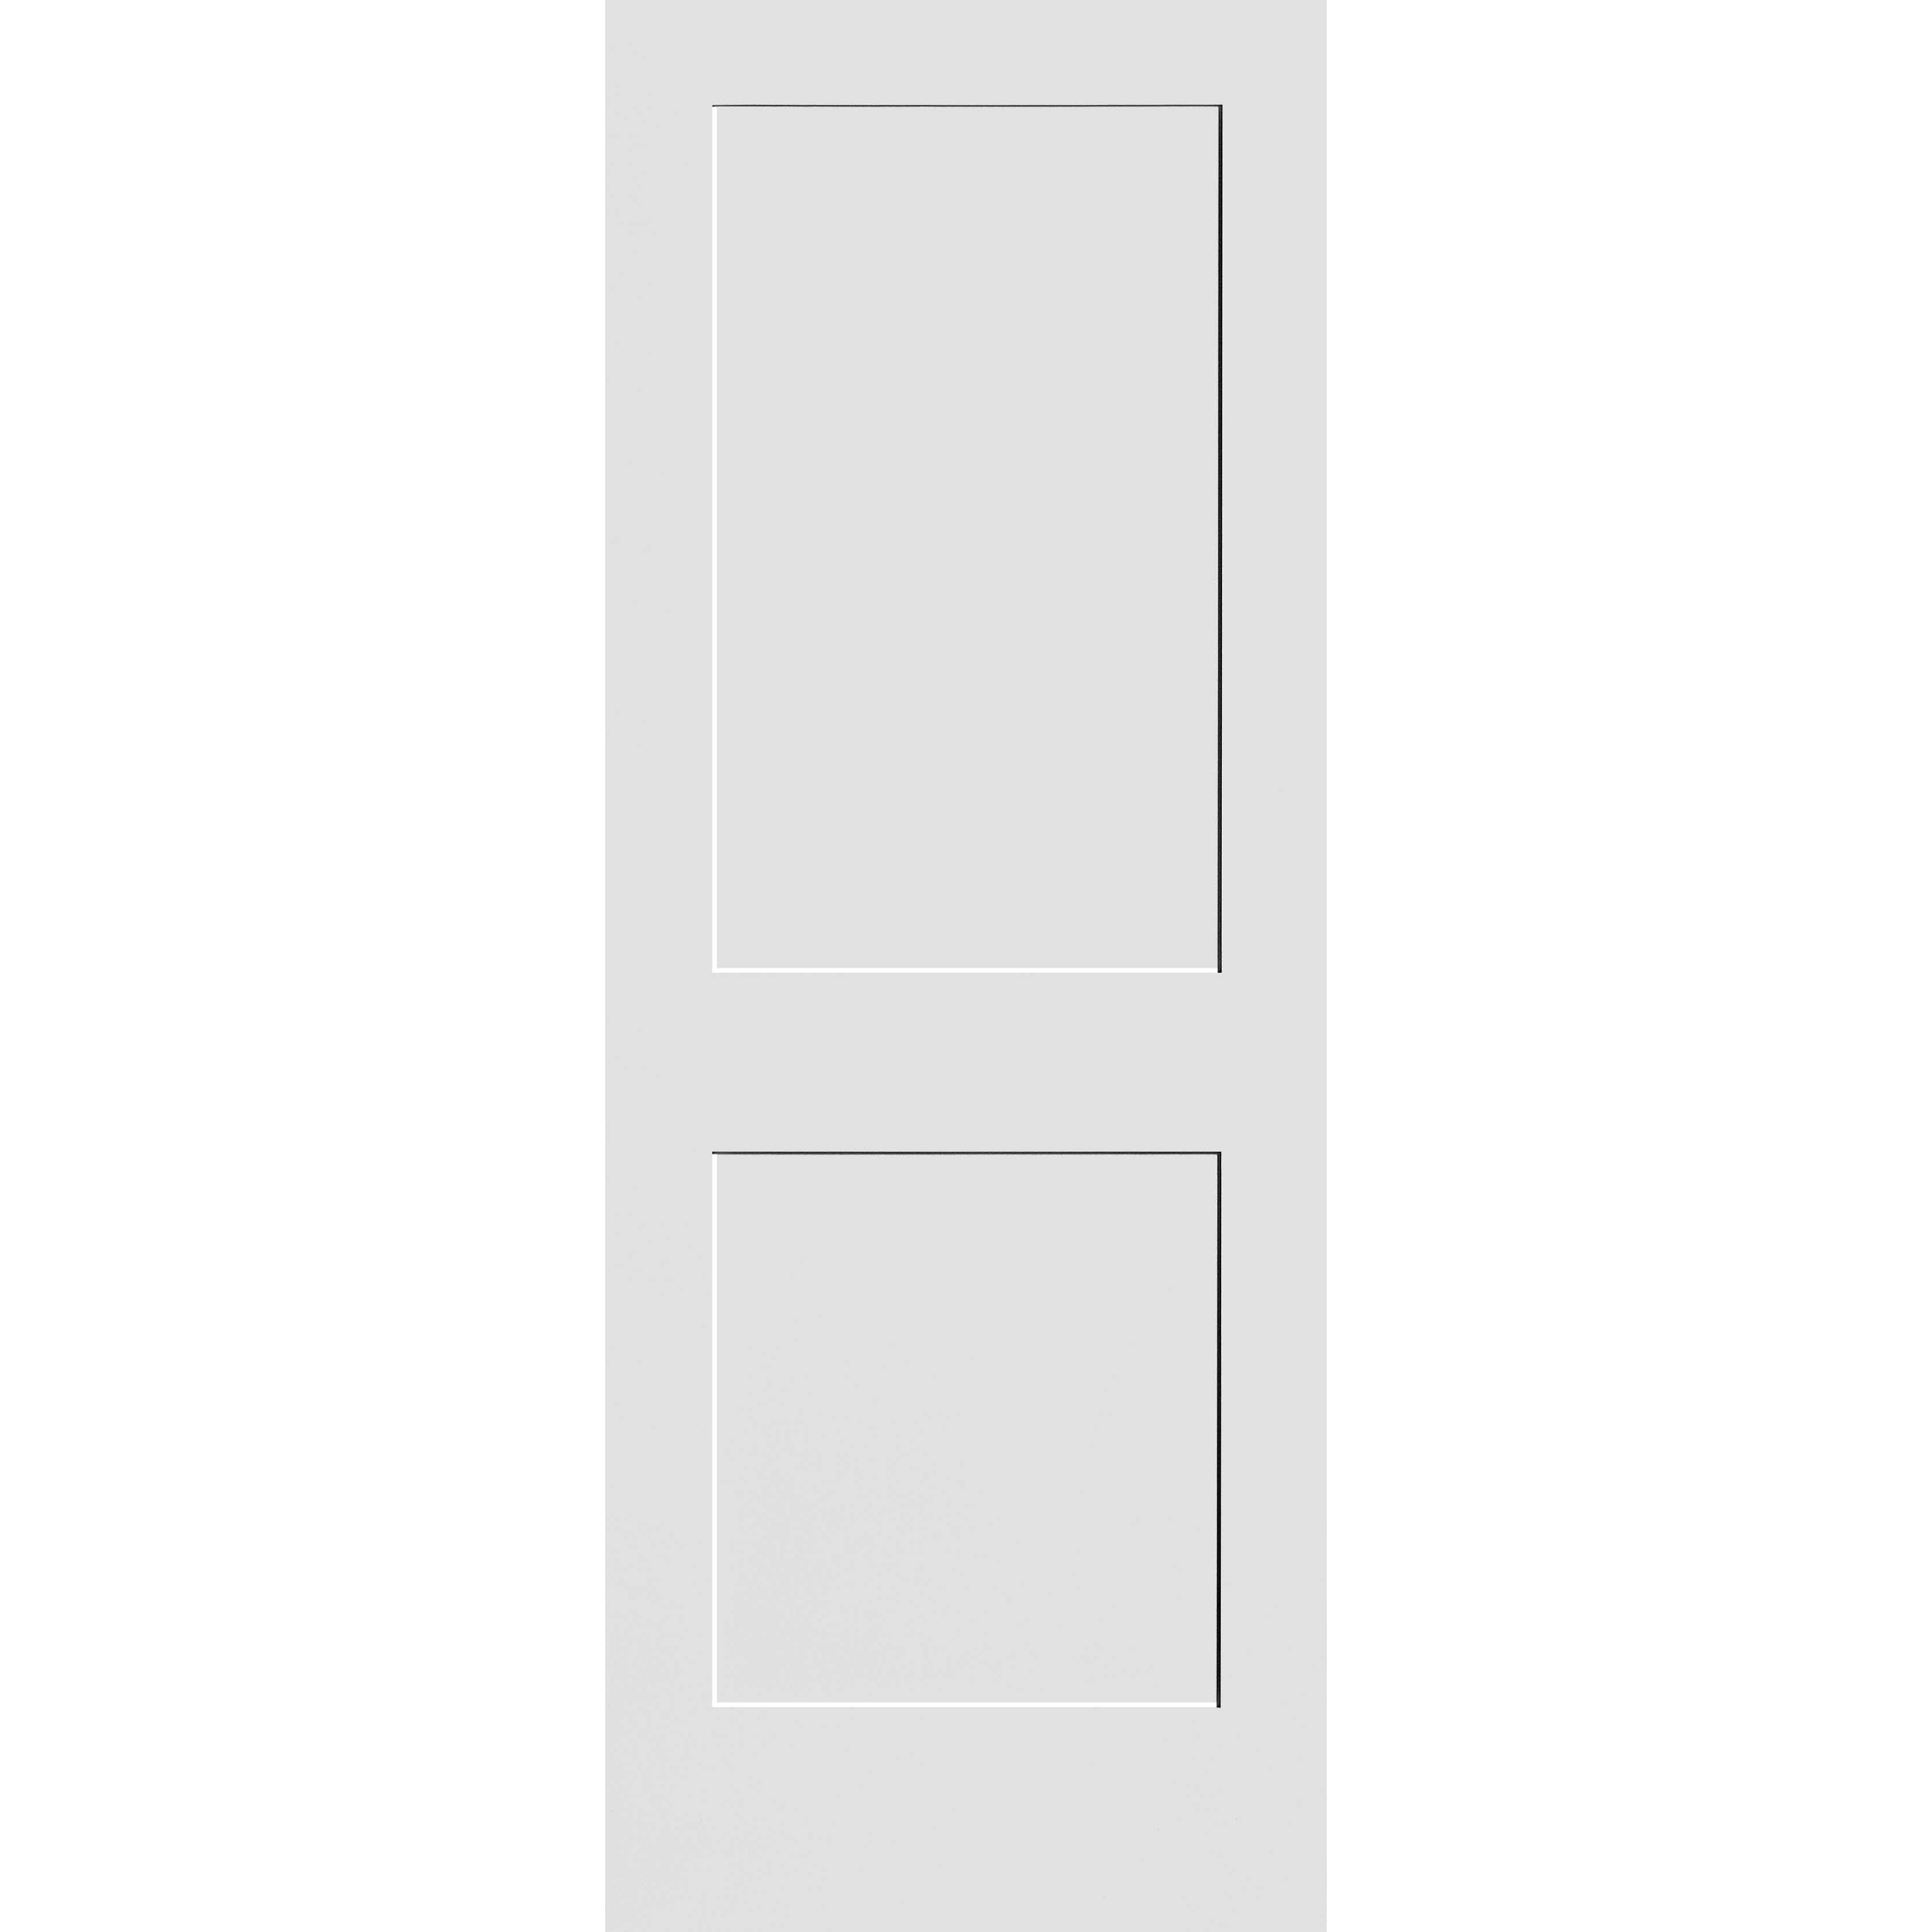 32X80 #8402 MDF PRIMED SHAKER PANEL INTERIOR DOOR